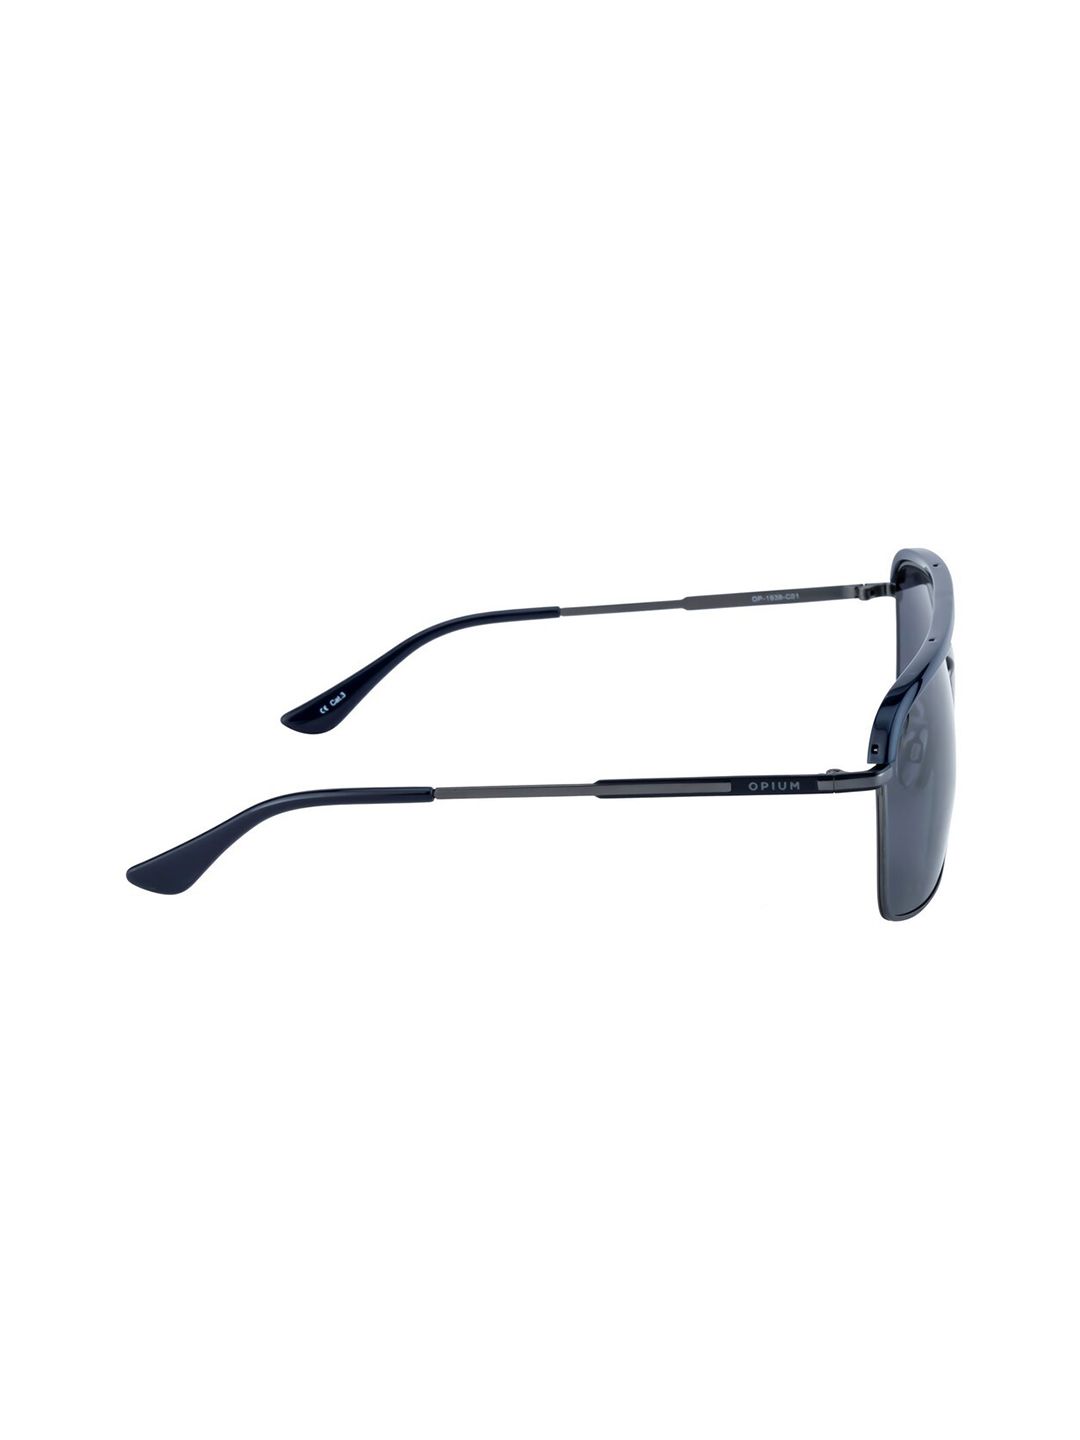 Buy Opium Eyewear Non-Polarized Rectangular Sunglasses OP-1830-C04